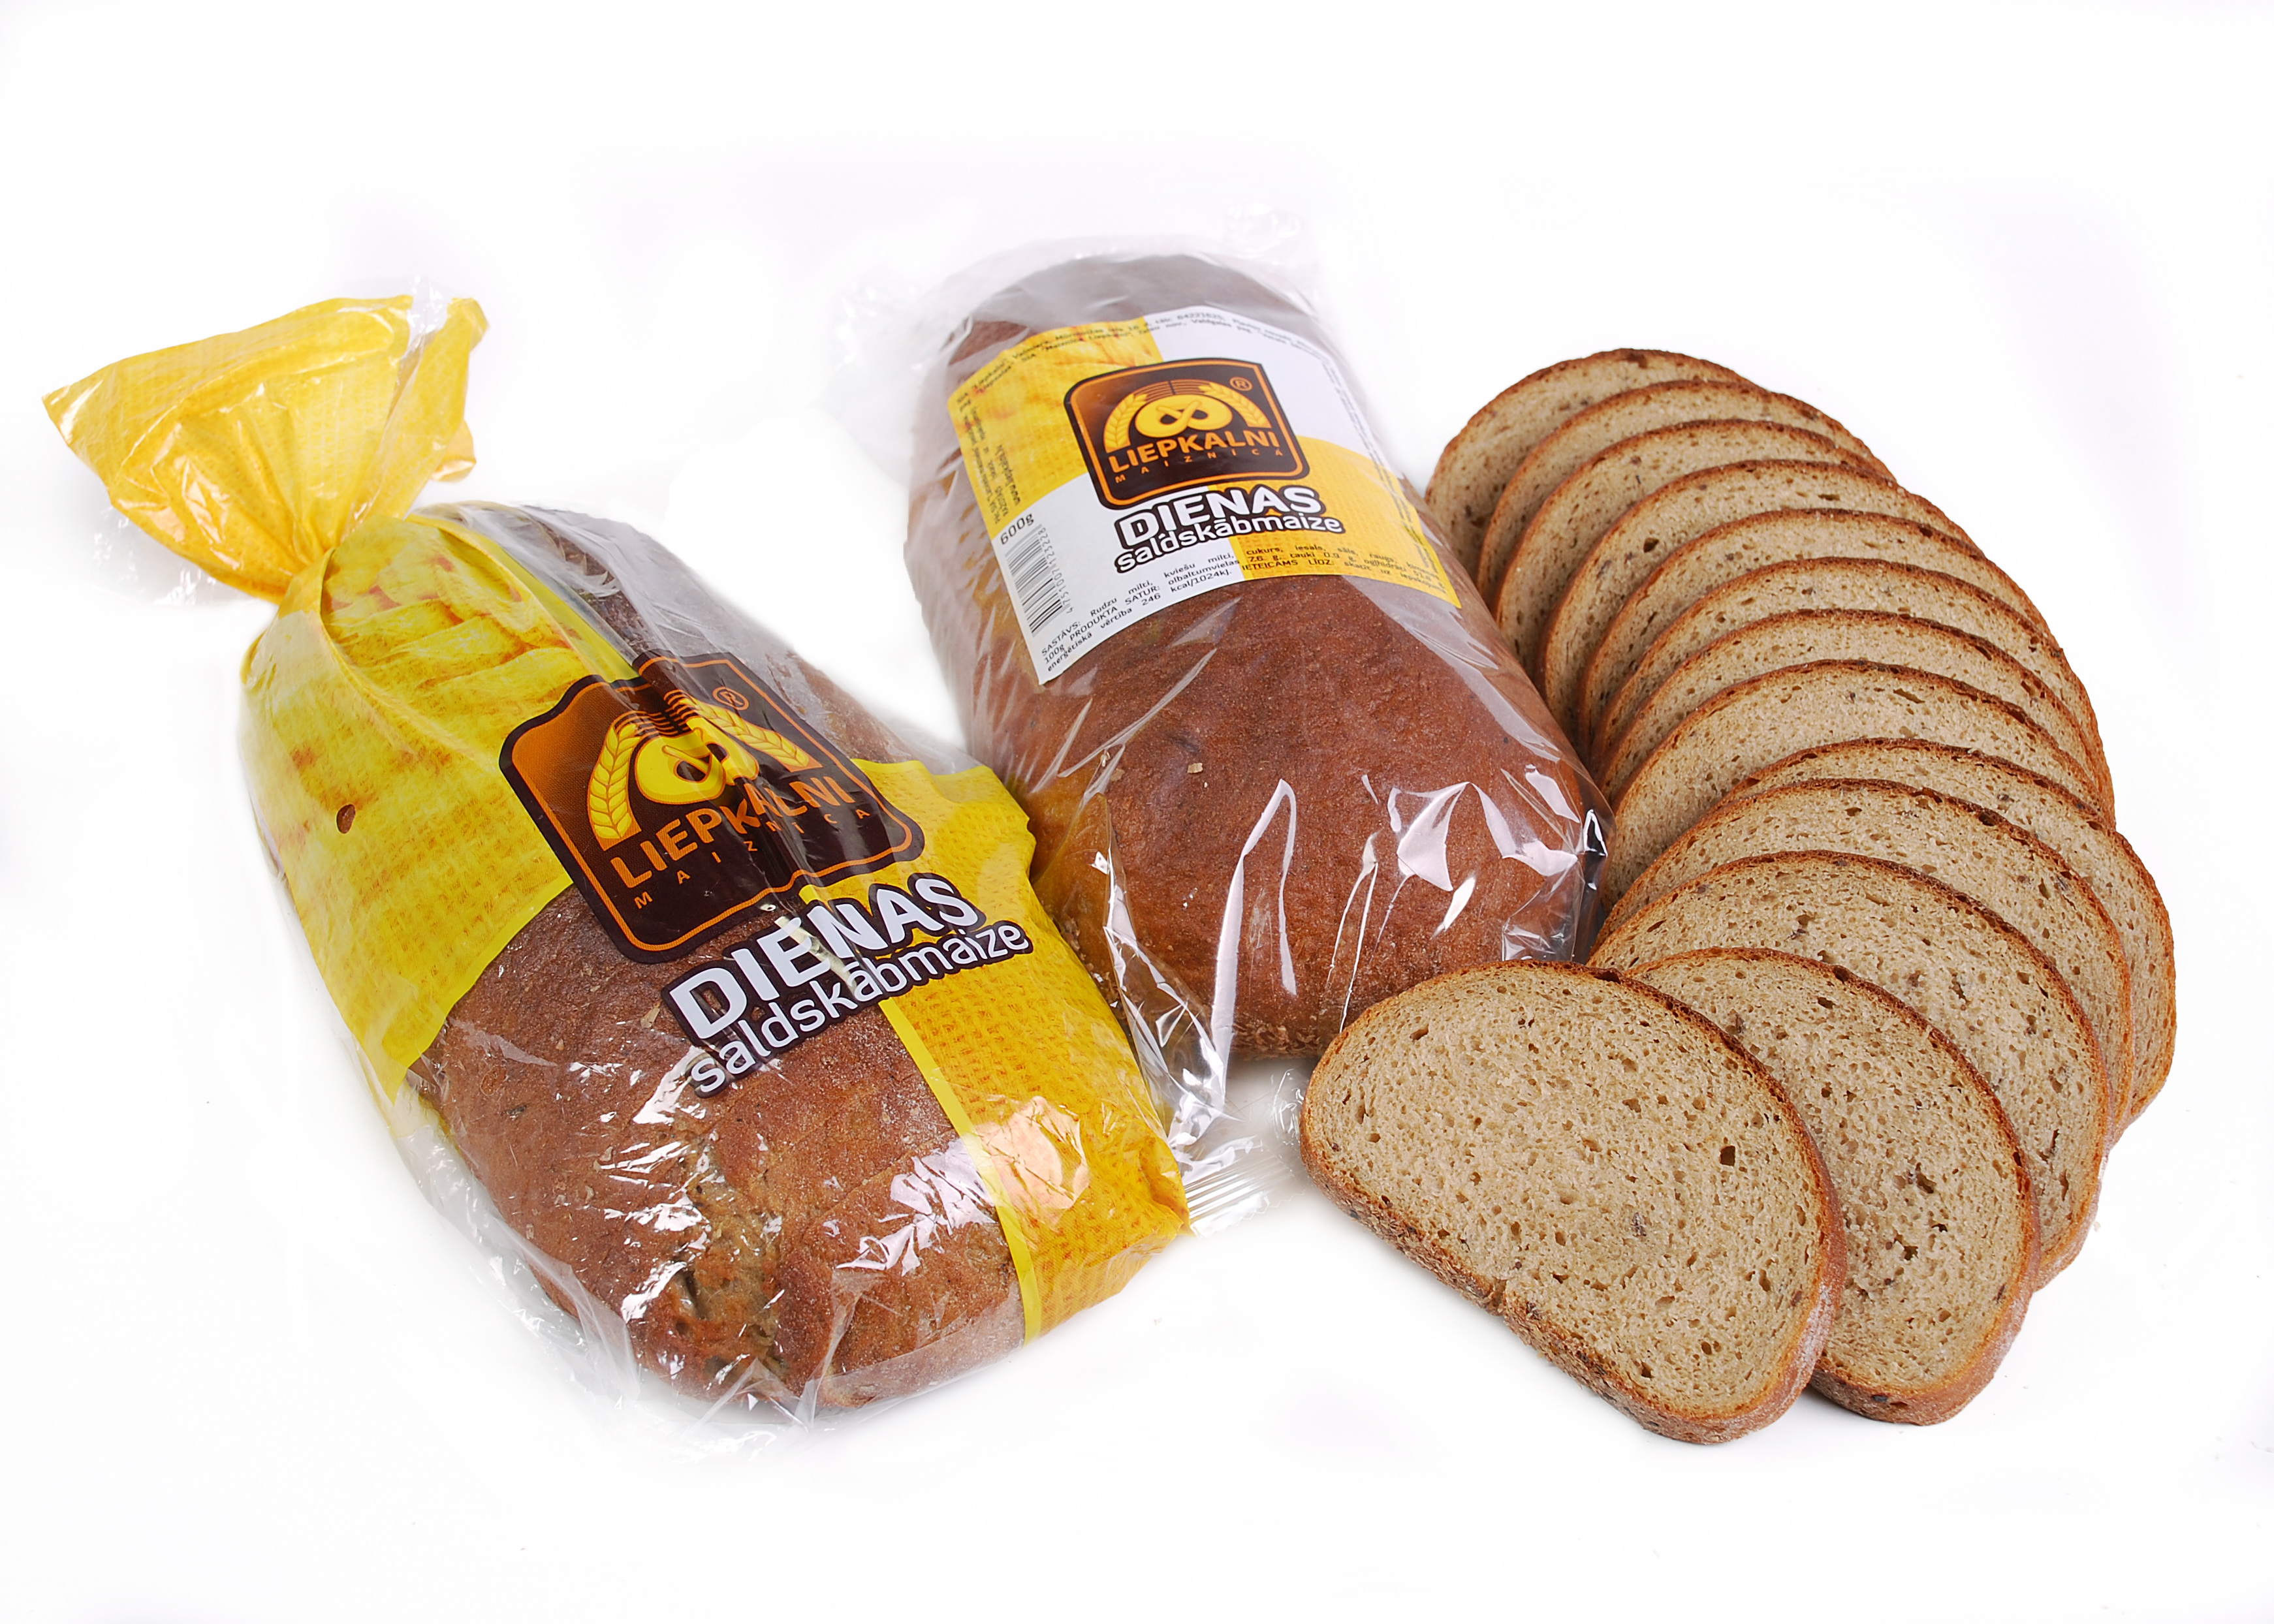 Dulled fine rye bread